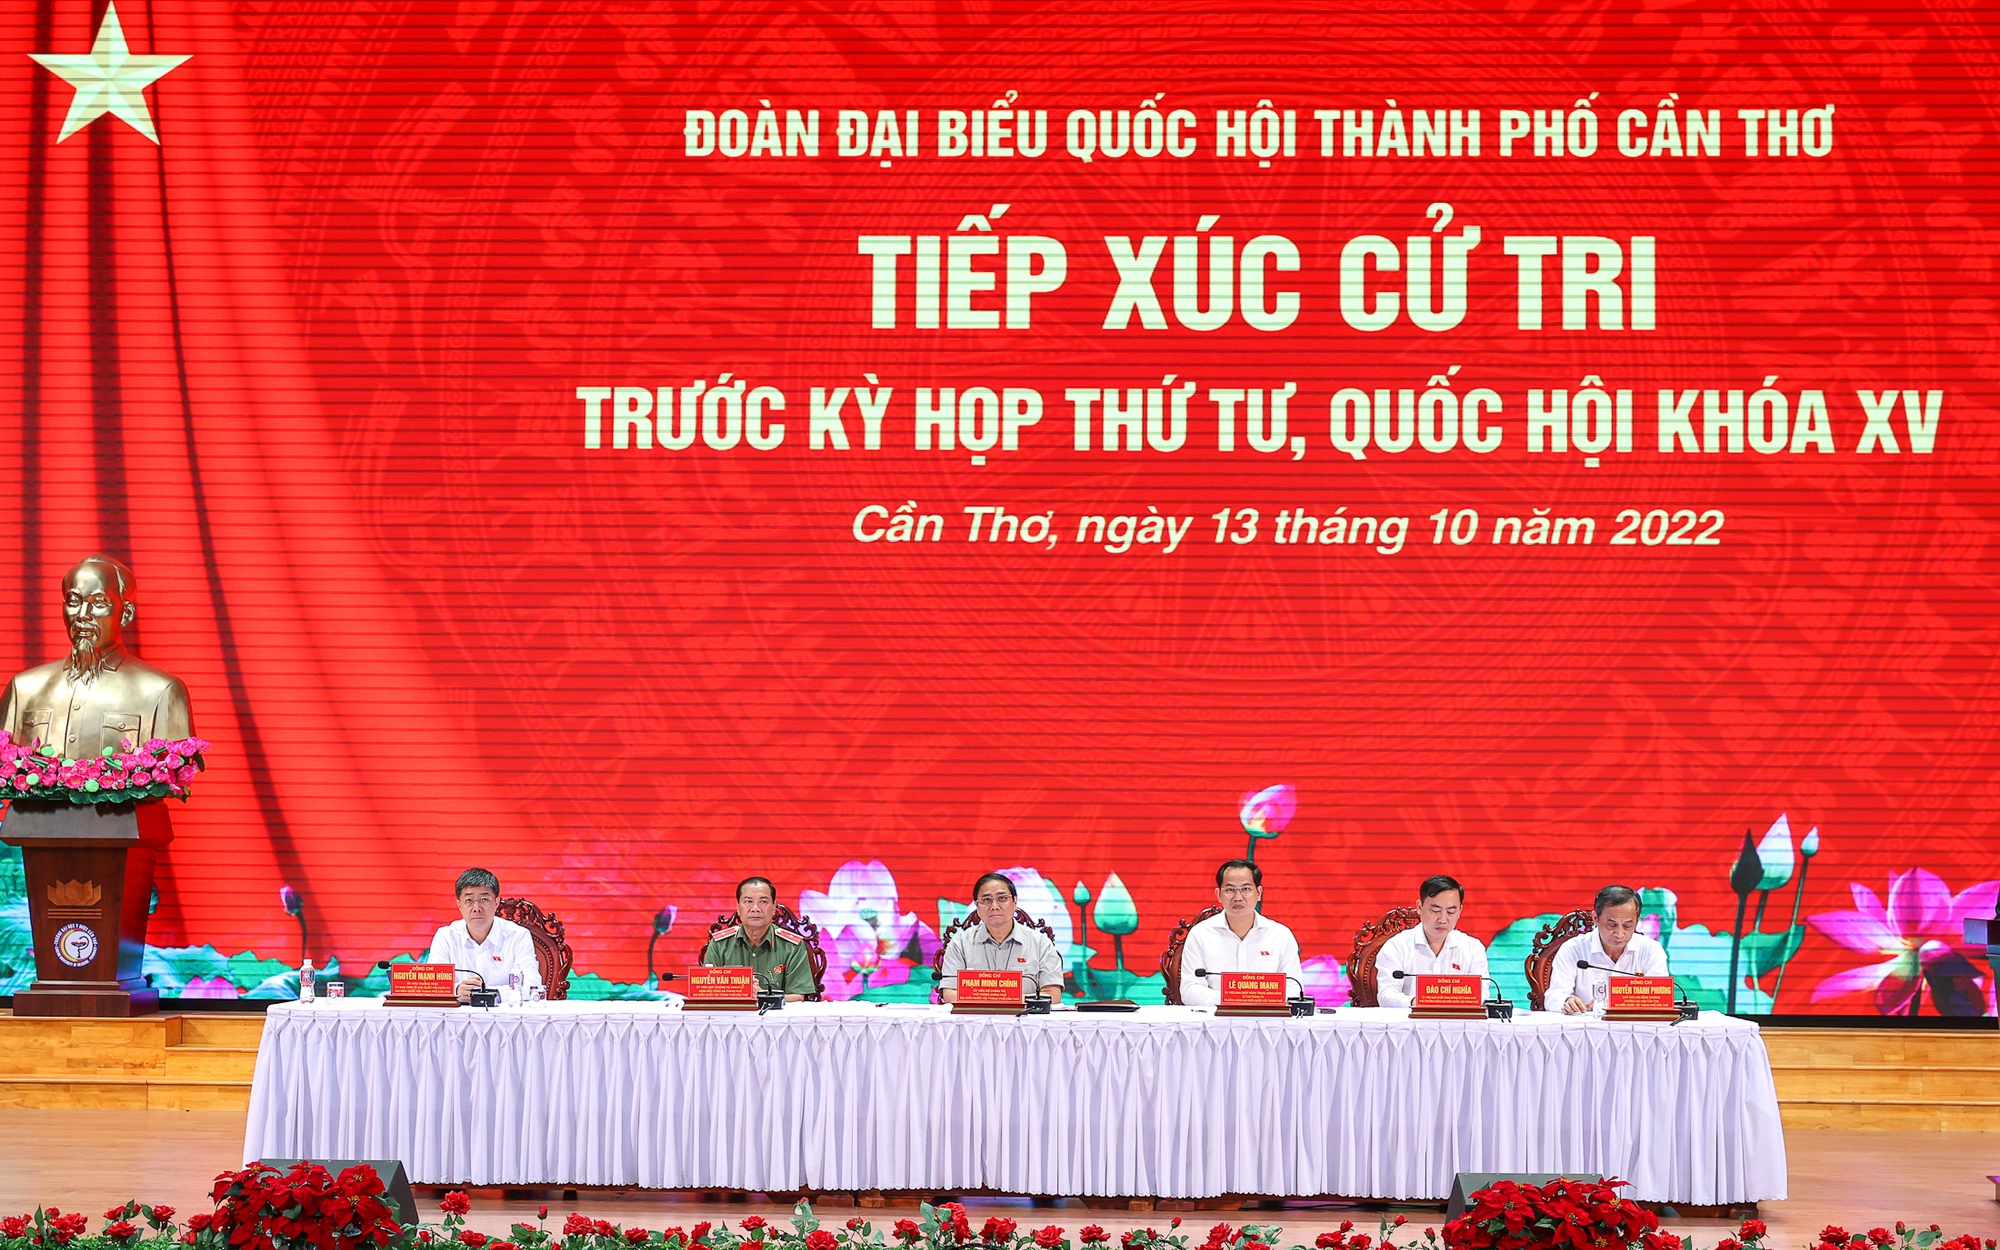 Thủ tướng Phạm Minh Chính tiếp xúc cử tri TP. Cần Thơ